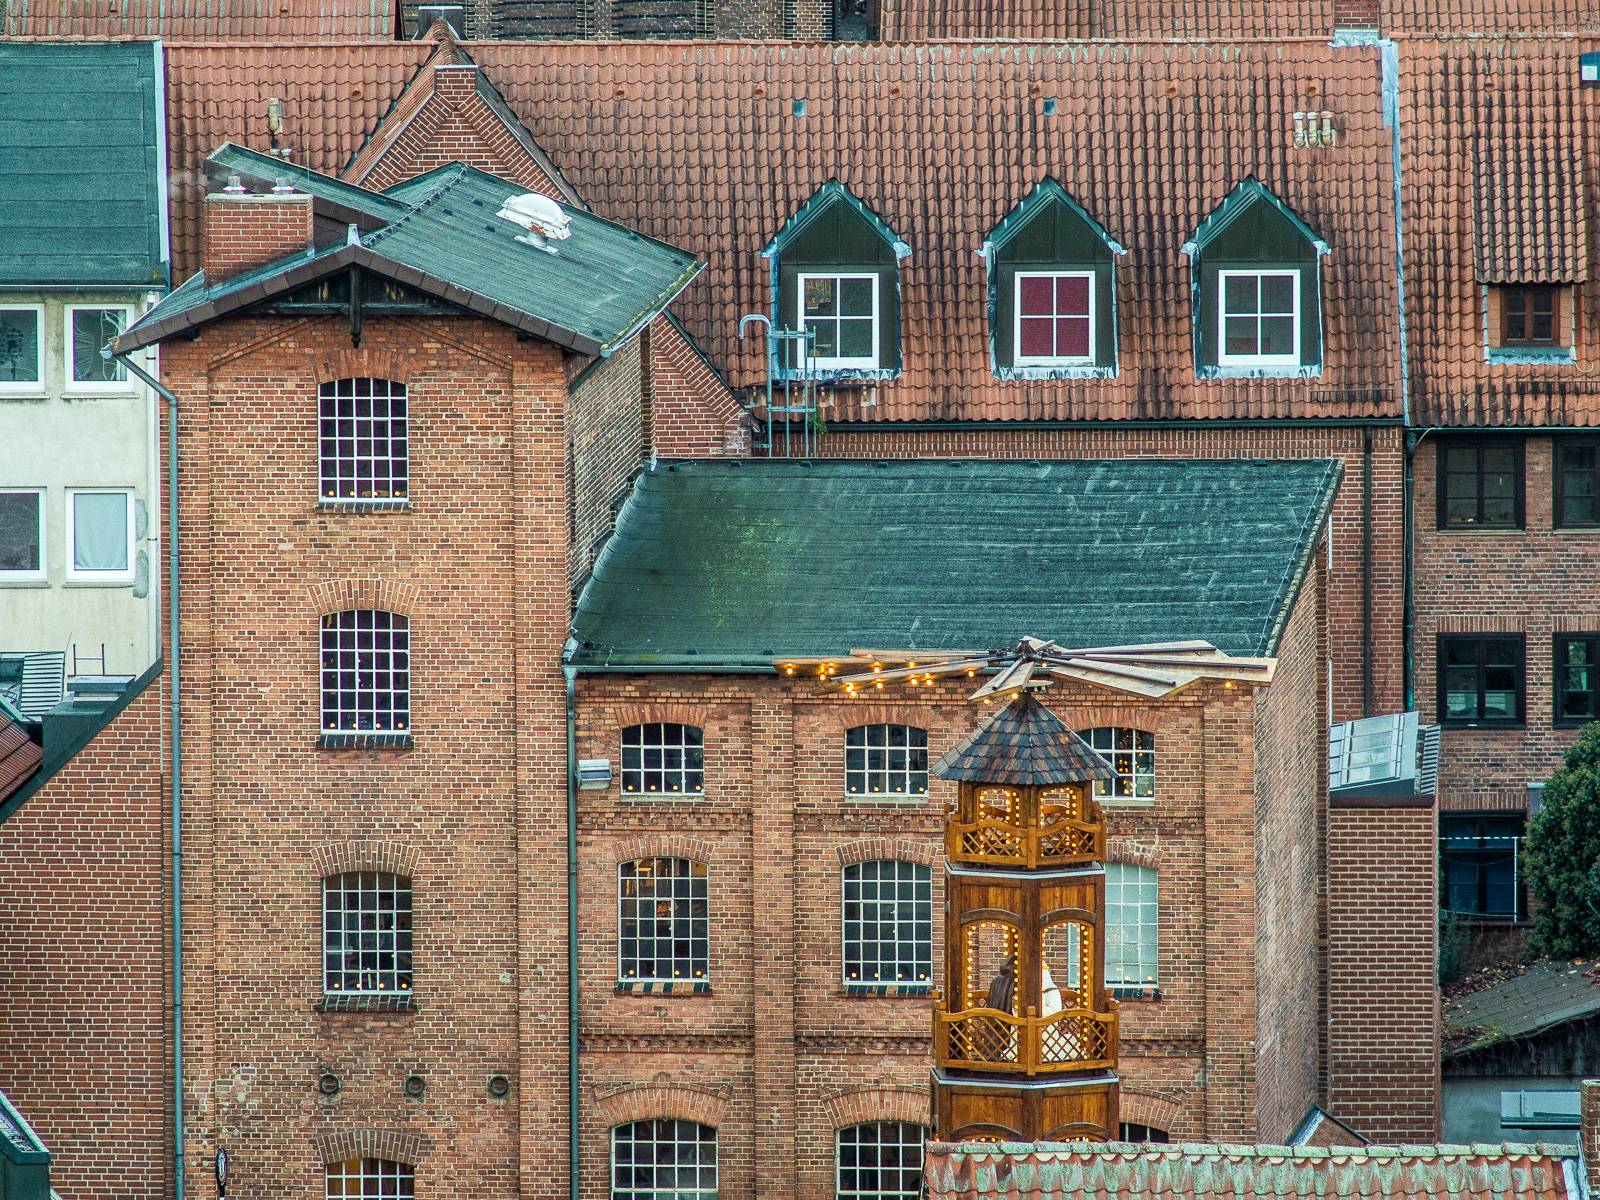 Riesige Holz-Weihnachtspyramide vor Backsteinhaus, Lüneburg